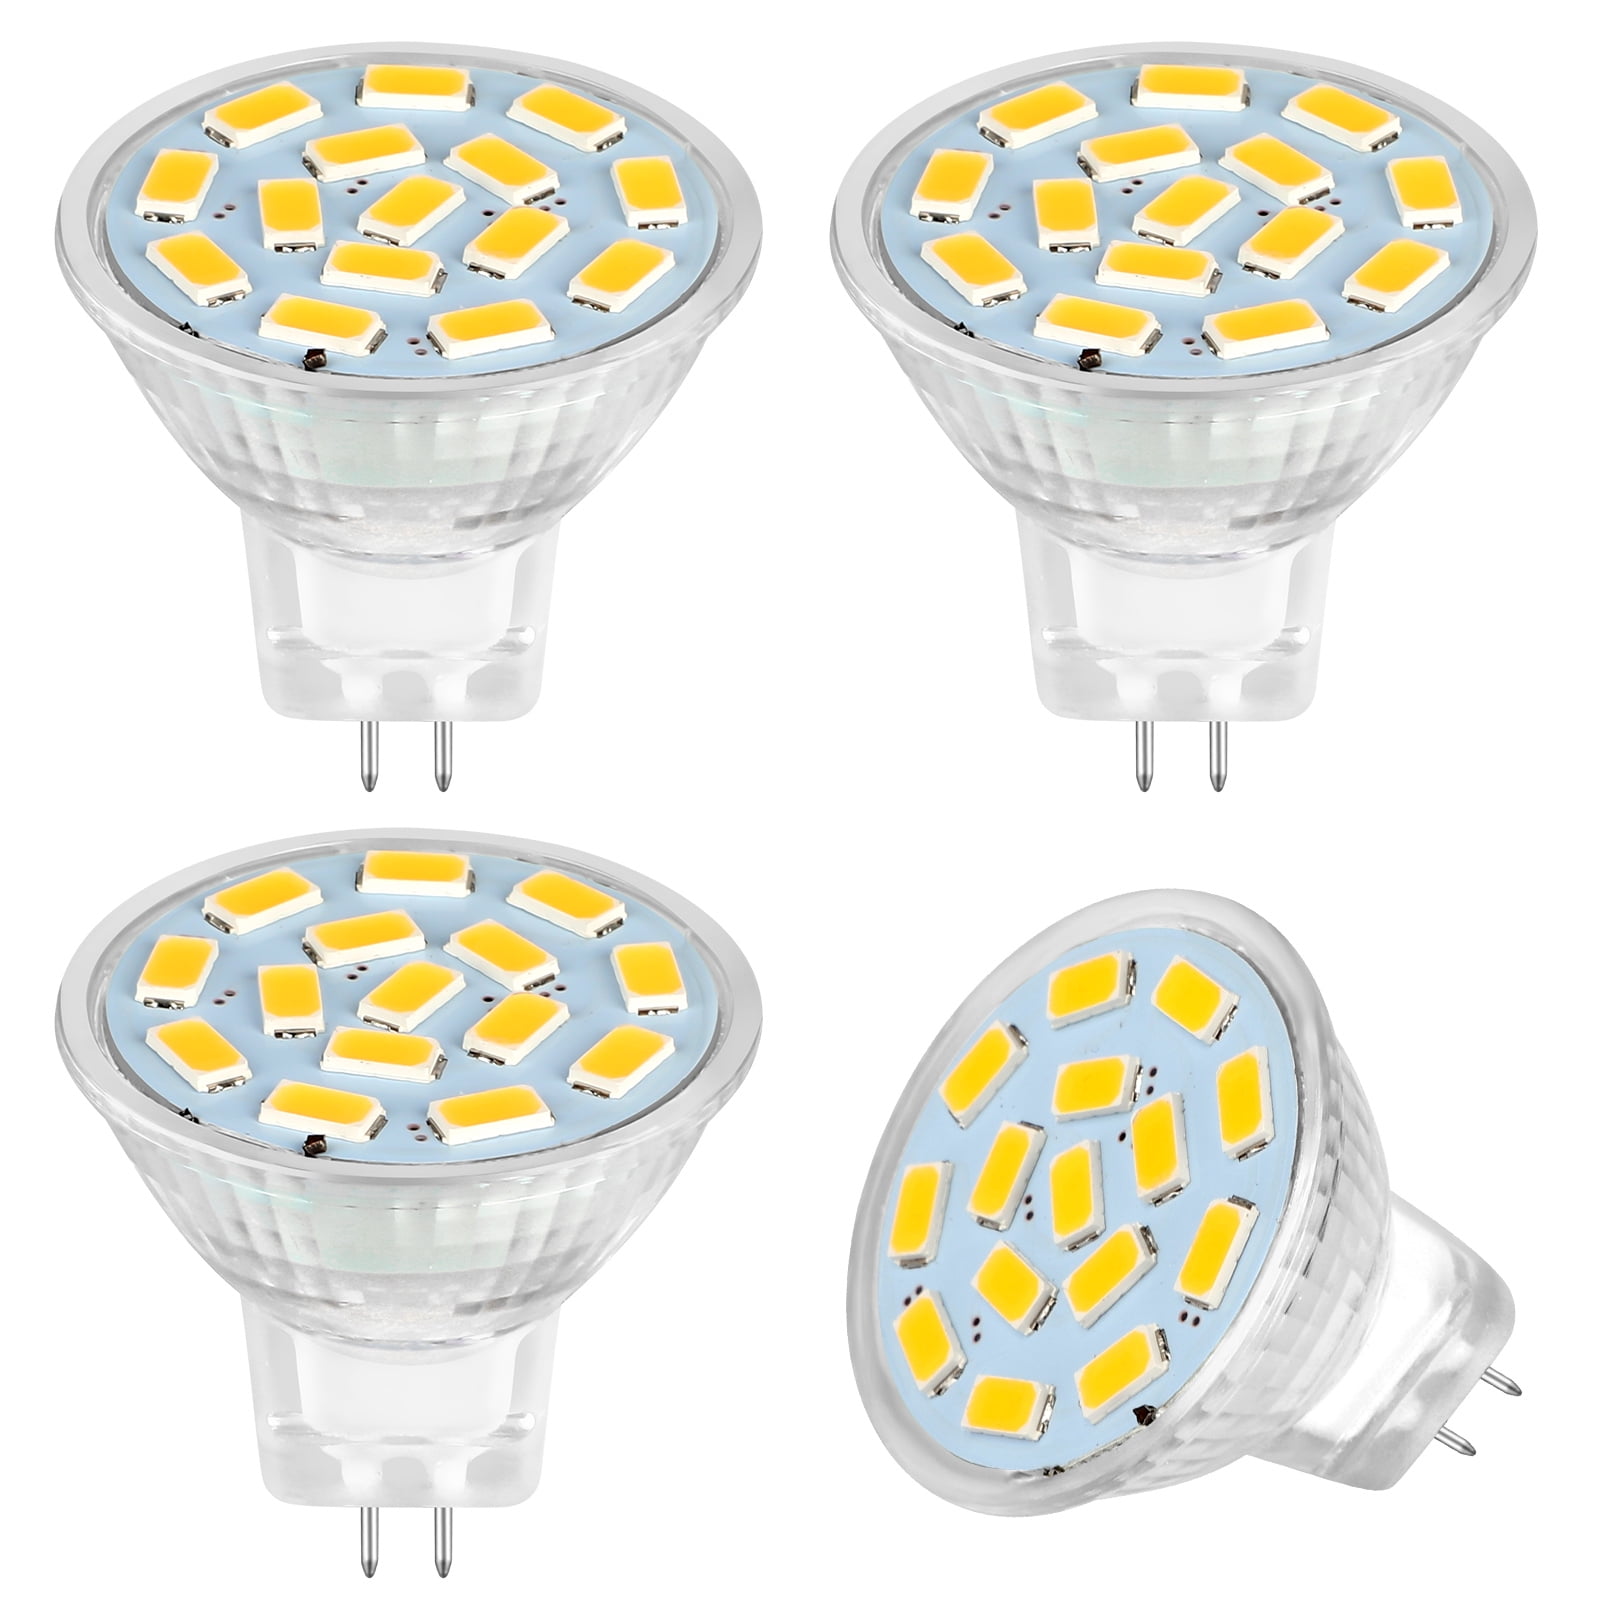 4pcs LED MR11 Light Bulbs, EEEkit 3W 12V LED MR11 Flood Light Bulbs  Equivalent to 20W Halogen Bulbs, GU4 Bi-Pin Base for Landscape Accent  Lighting, 3000K Soft White 